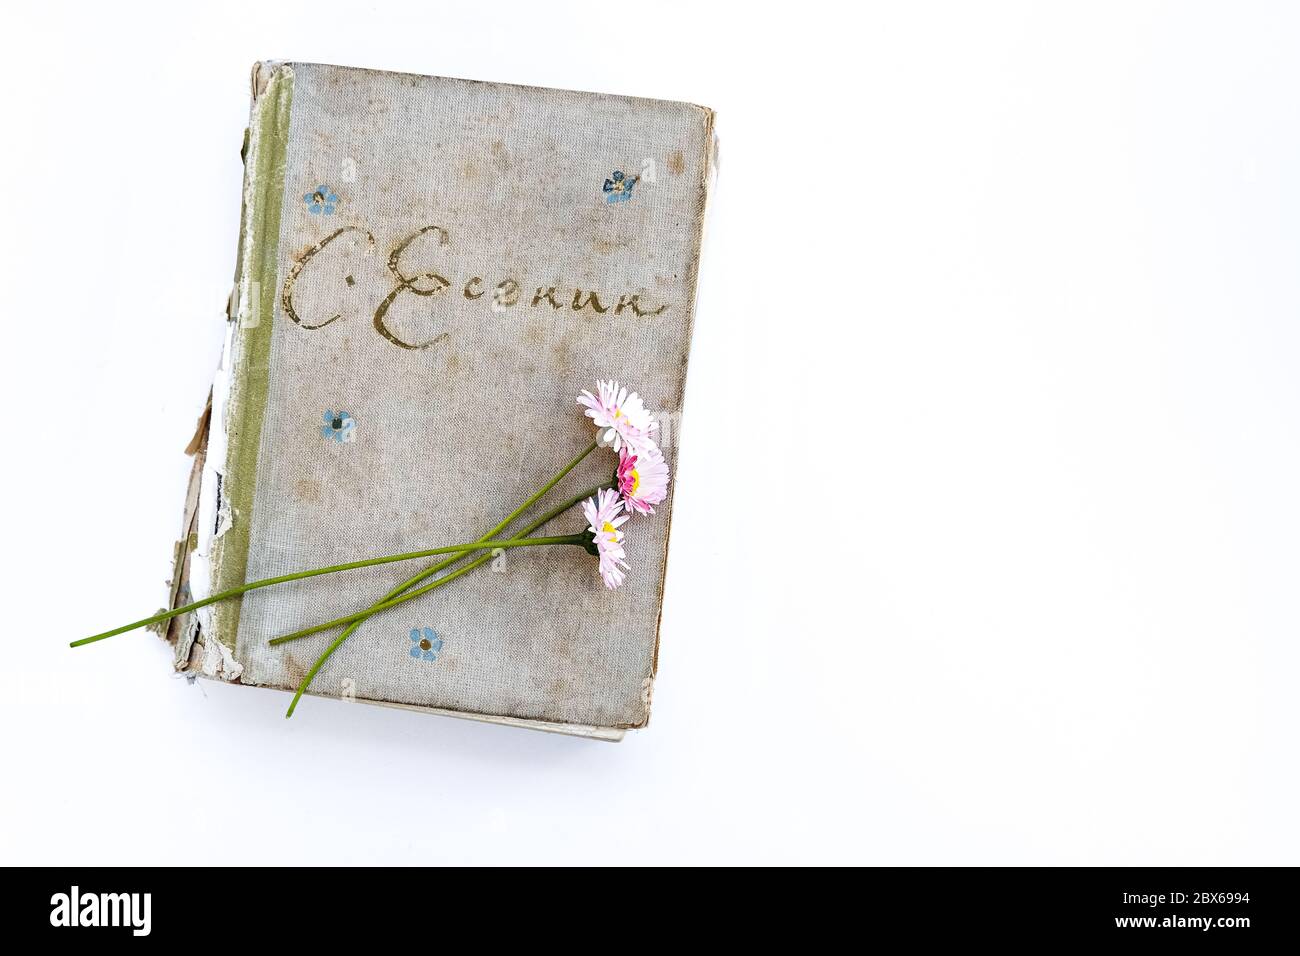 Vecchio libro di poesia del poeta russo Sergei Yesenin su uno sfondo bianco. Bouquet di fiori da margherite. Vista dall'alto. Foto Stock